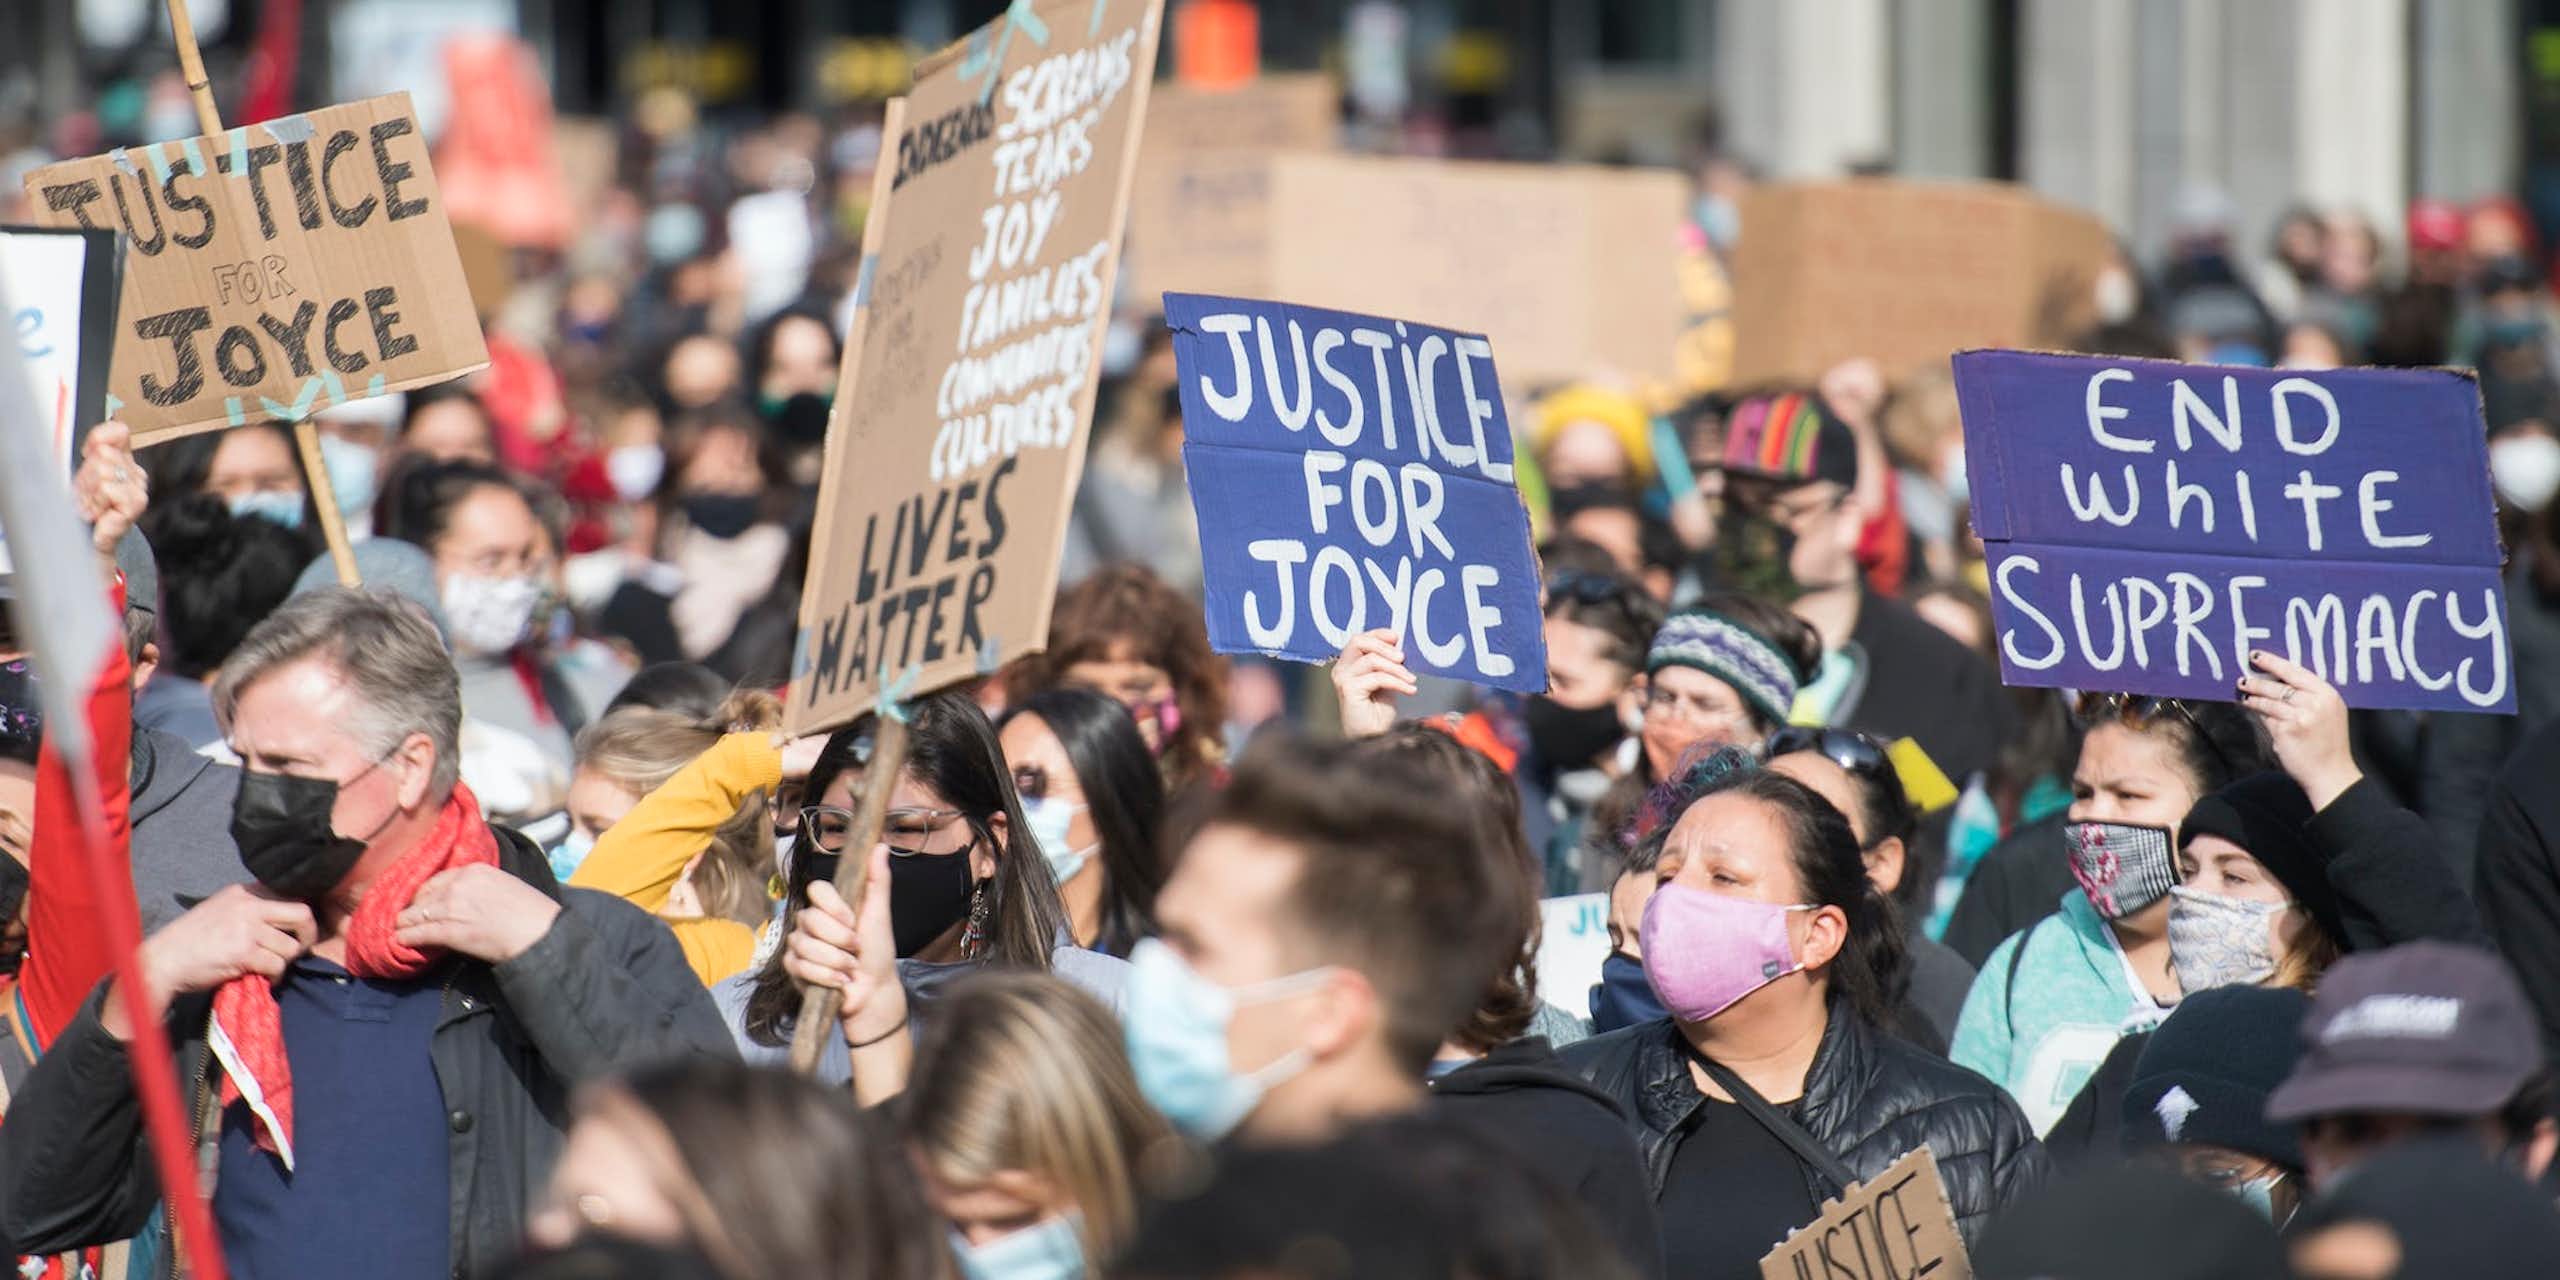 Lors d'une manifestation, des personnes portent des pancartes sur lesquelles on peut lire « Justice for Joyce » en anglais.